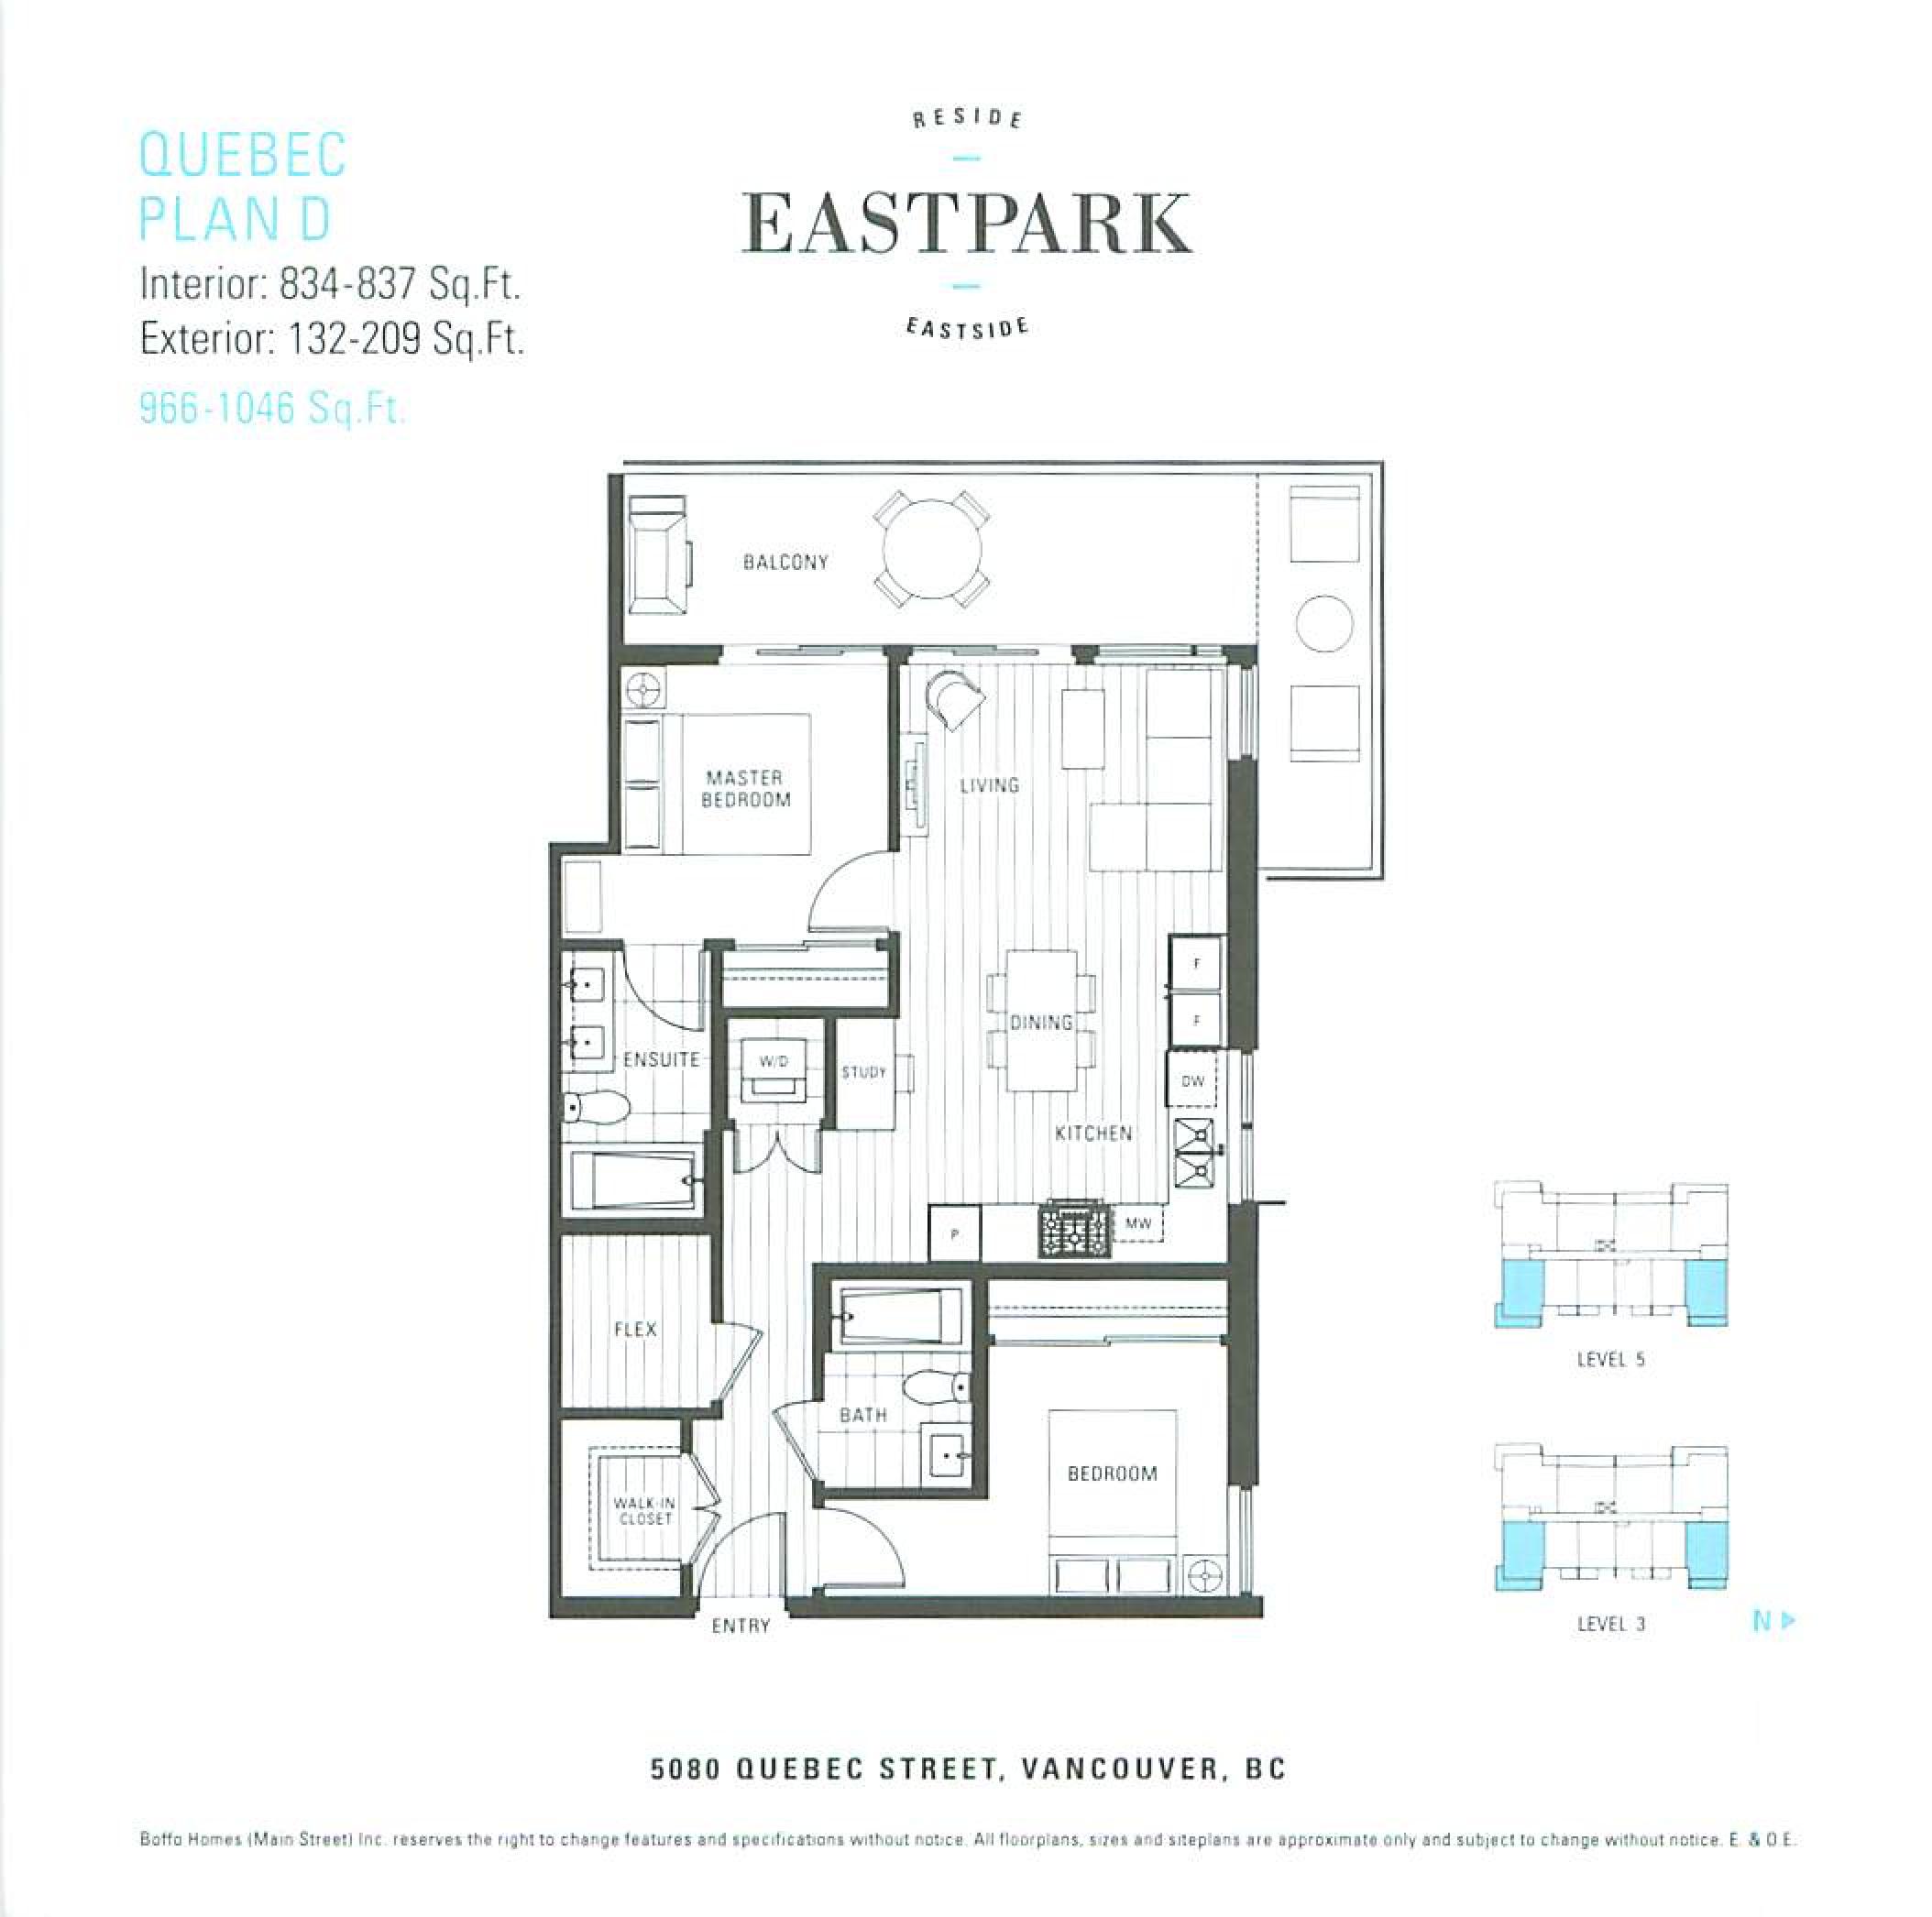 EastPark Quebec Smaller Floor Plans Mike Stewart-page-006